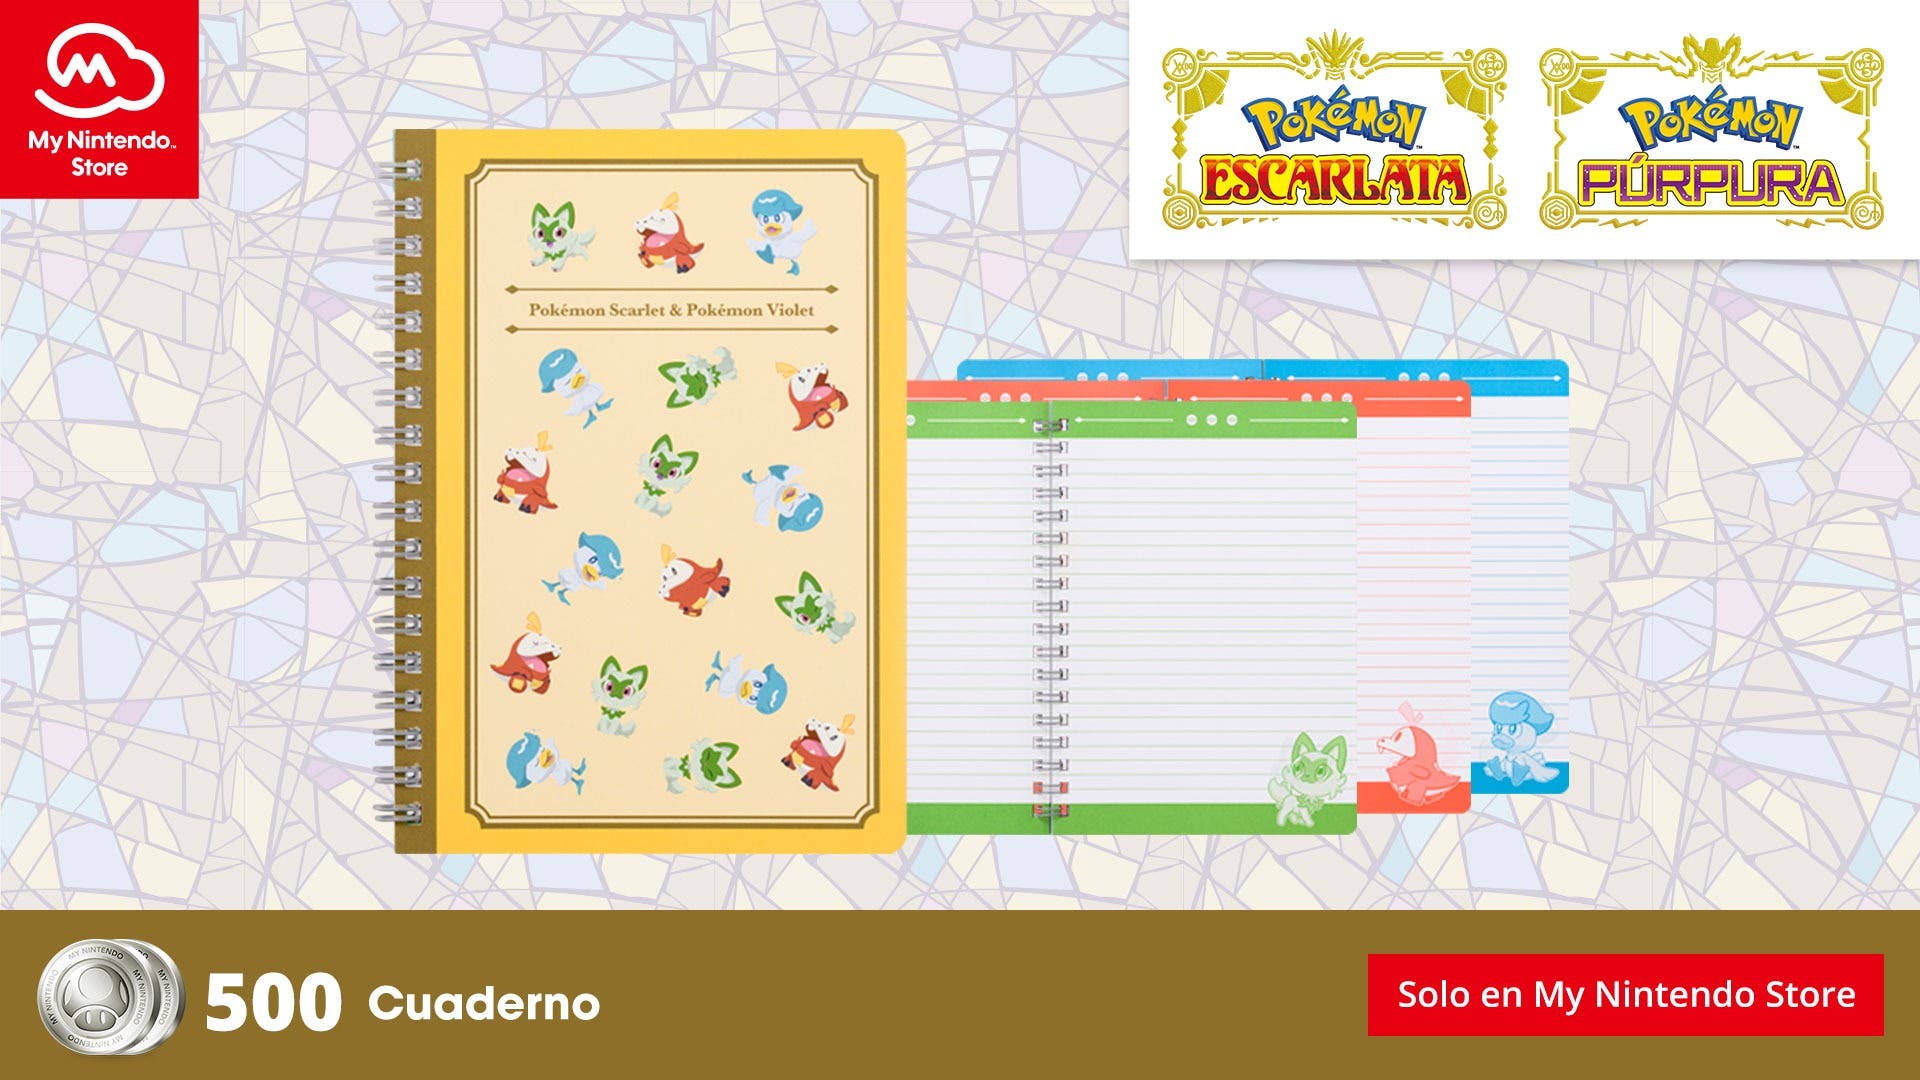 My Nintendo recibe este cuaderno de Pokémon Escarlata y Púrpura en el catálogo europeo